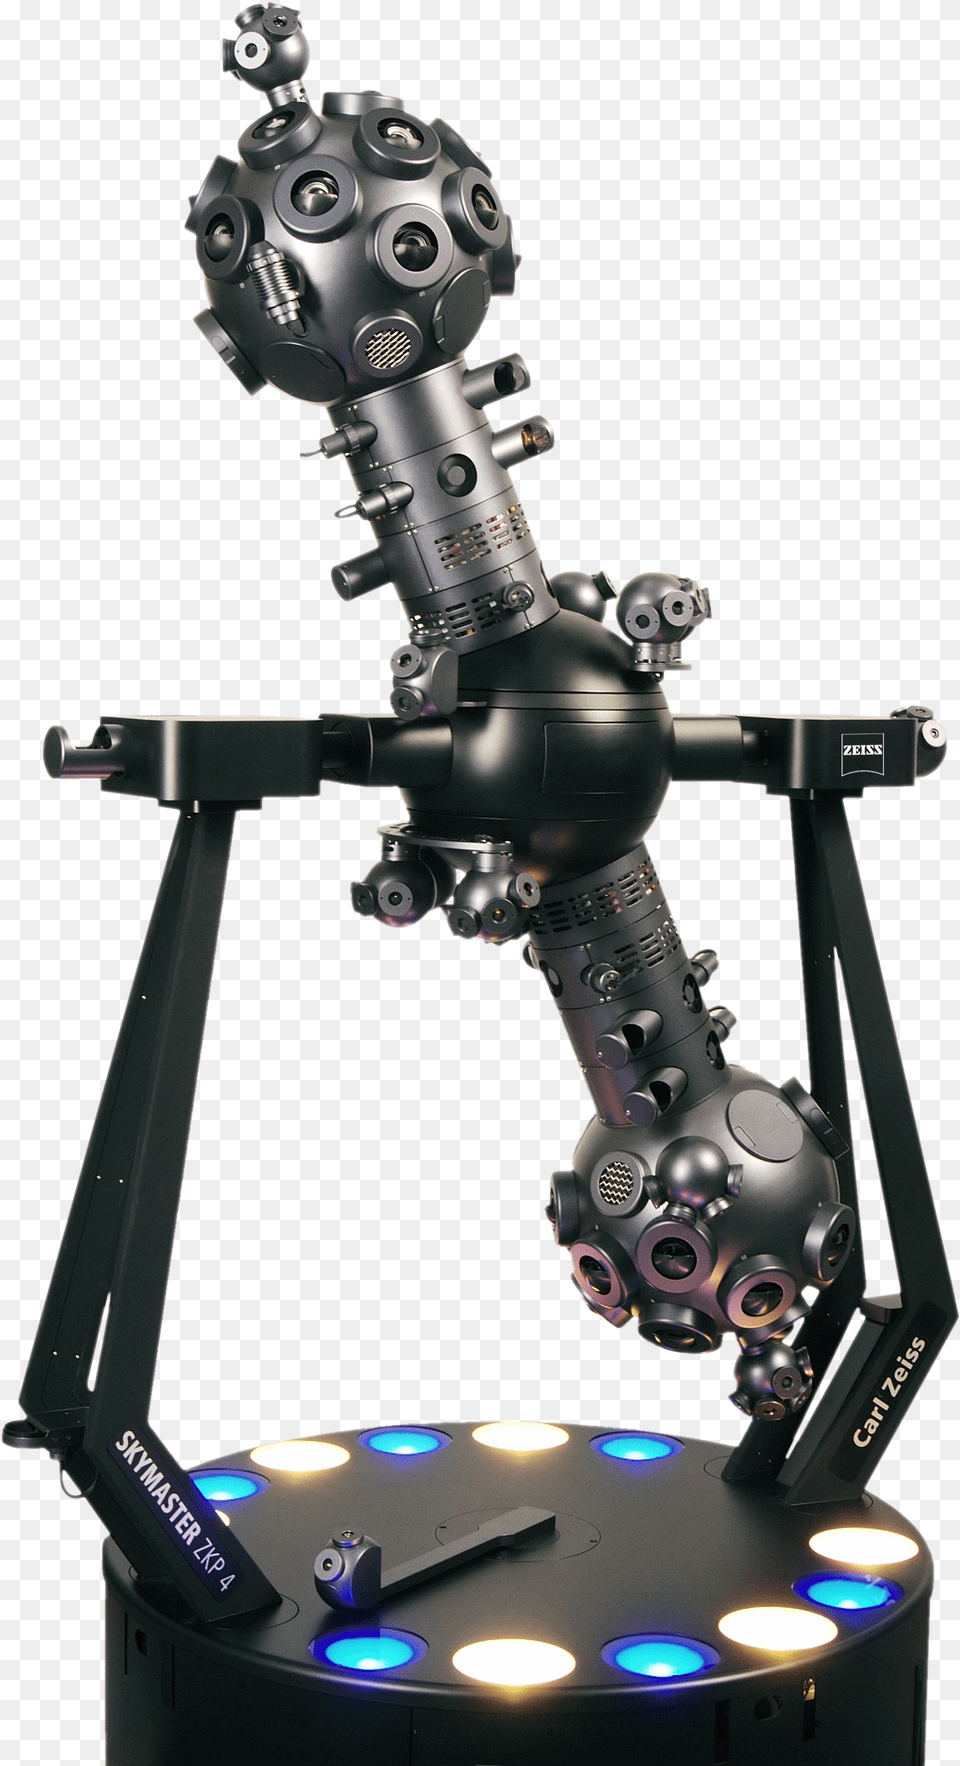 Zeiss Planetarium Projector, Robot Png Image